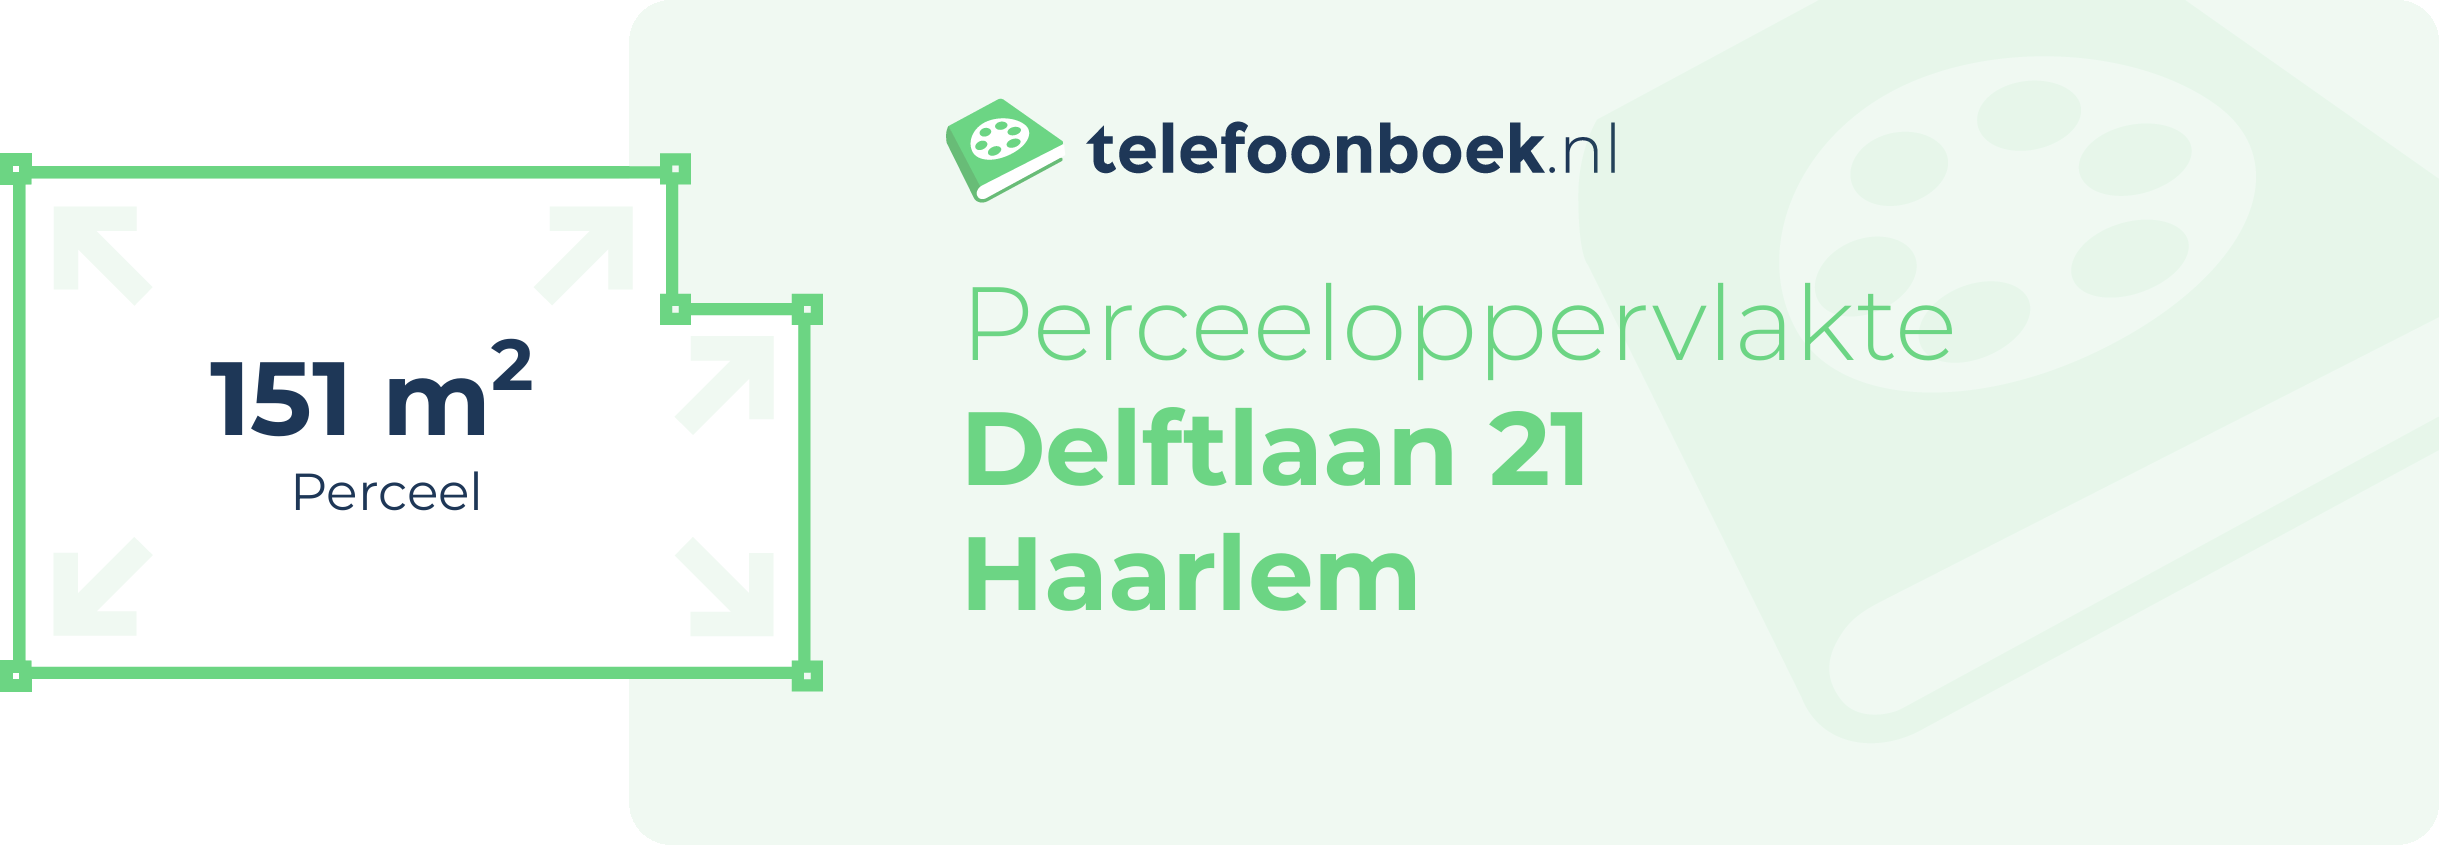 Perceeloppervlakte Delftlaan 21 Haarlem